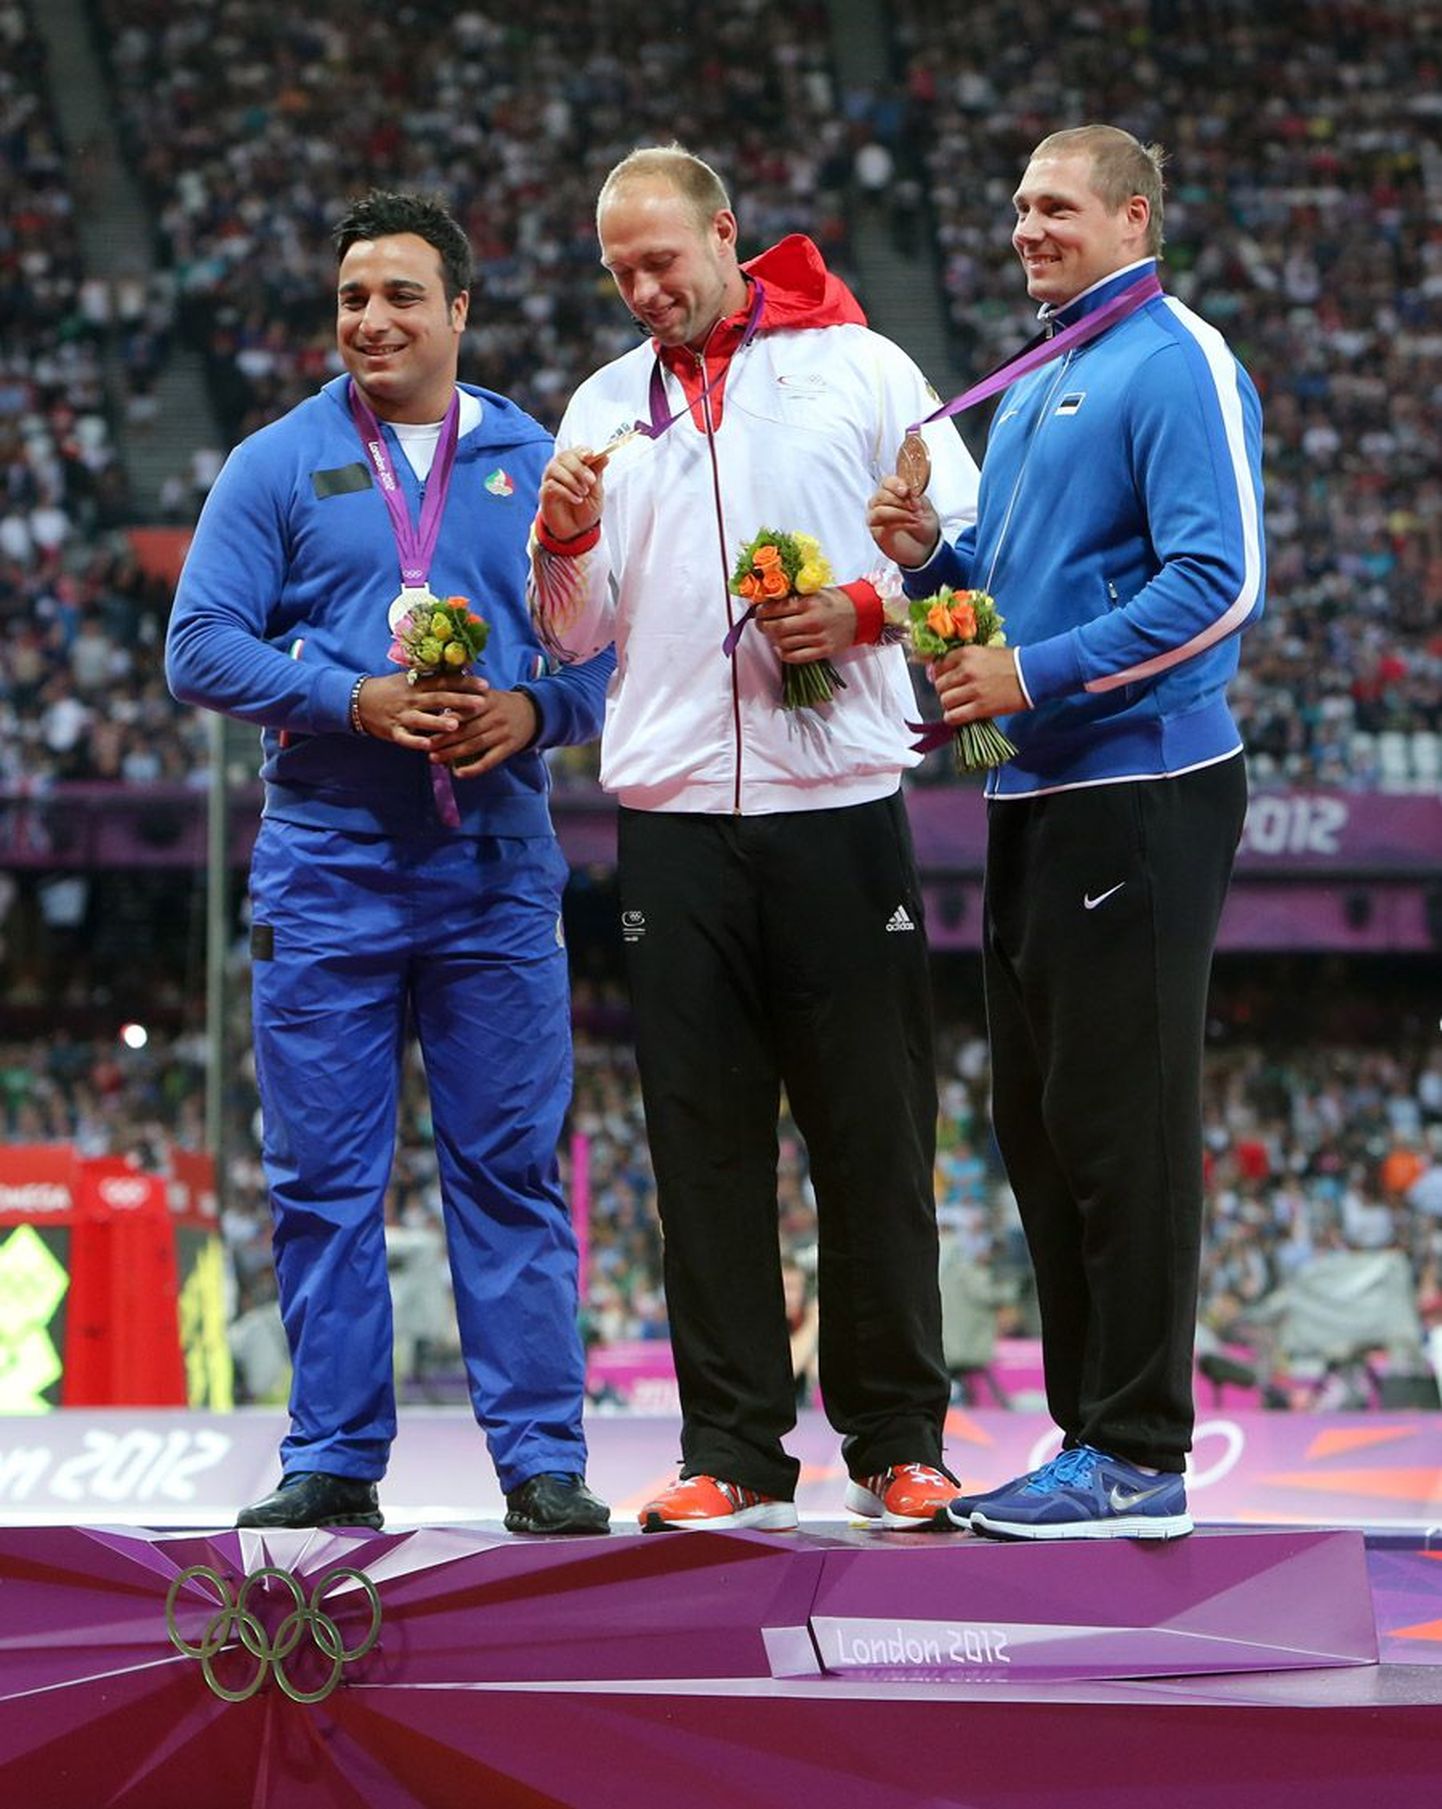 Olümpiavõitja Robert Harting (keskel) sai riigilt mitu korda vähem preemiat kui pronksimees Gerd Kanter.